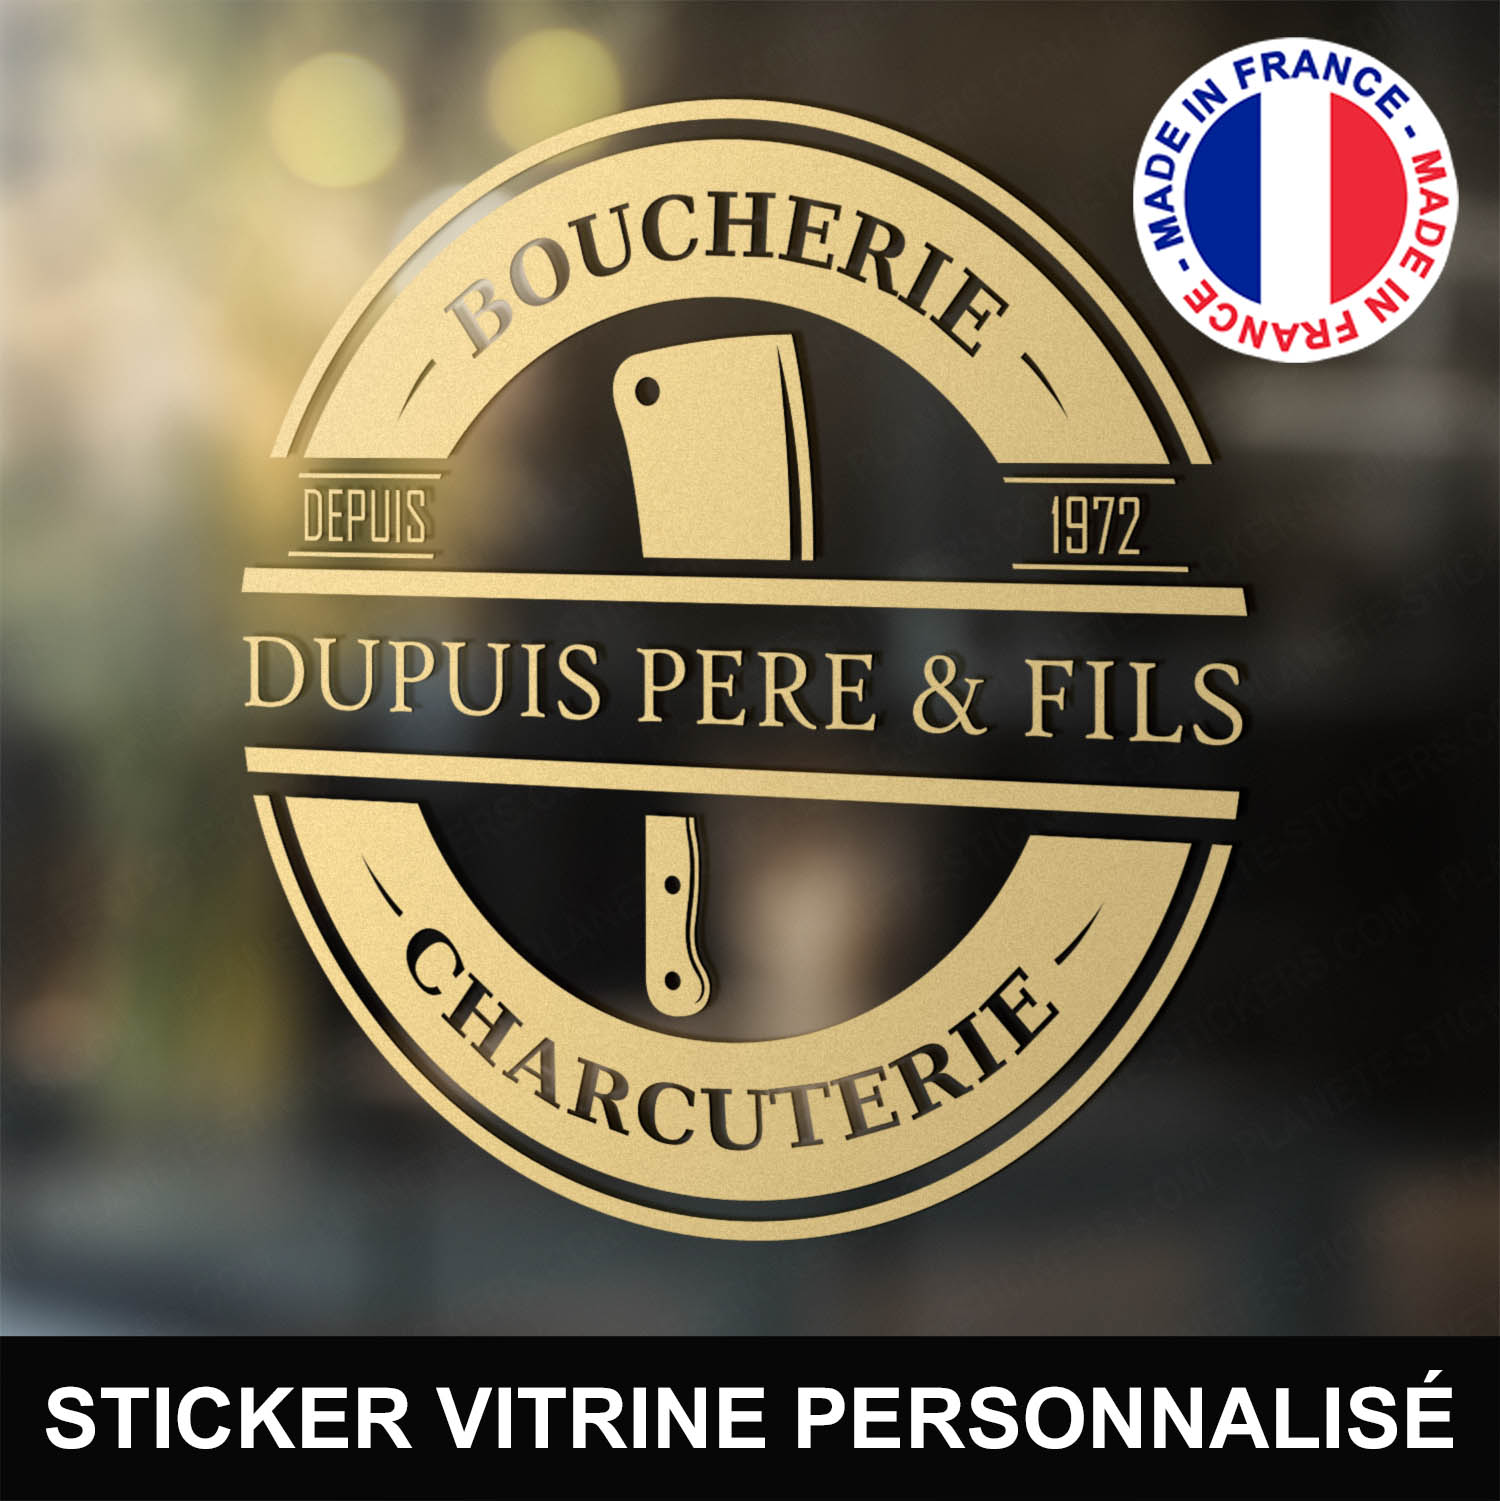 ref1boucherievitrine-stickers-boucherie-charcuterie-vitrine-sticker-personnalisé-autocollant-boutique-pro-boucher-charcutier-professionnel